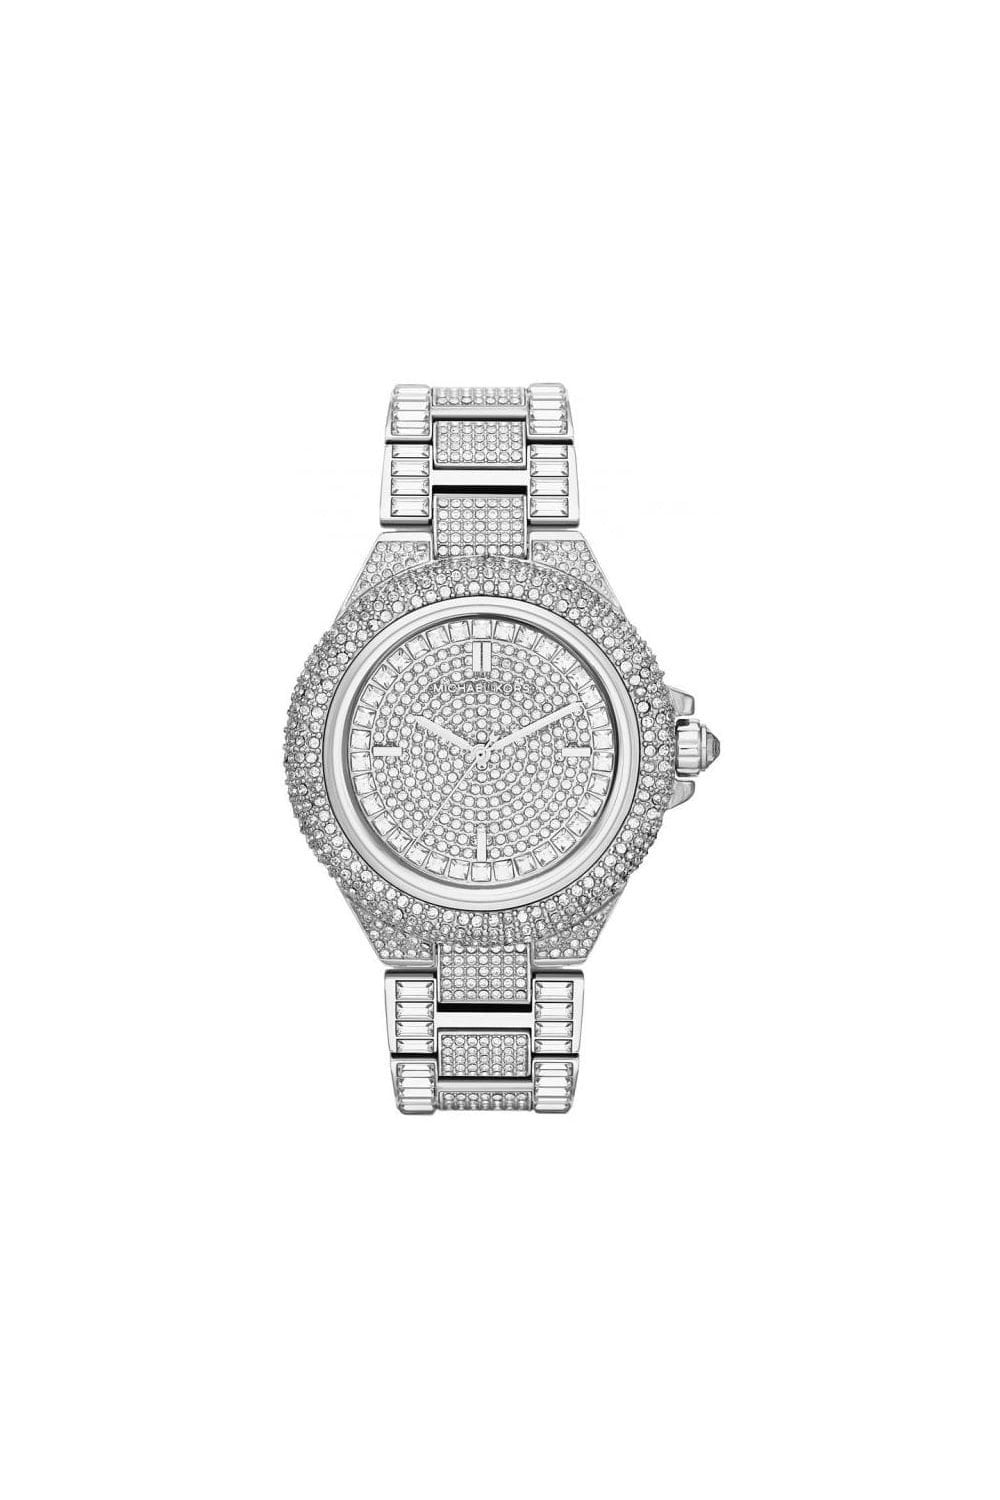 Michael Kors Ladies Watch Bradshaw Gems MK6486 - Watches & Crystals